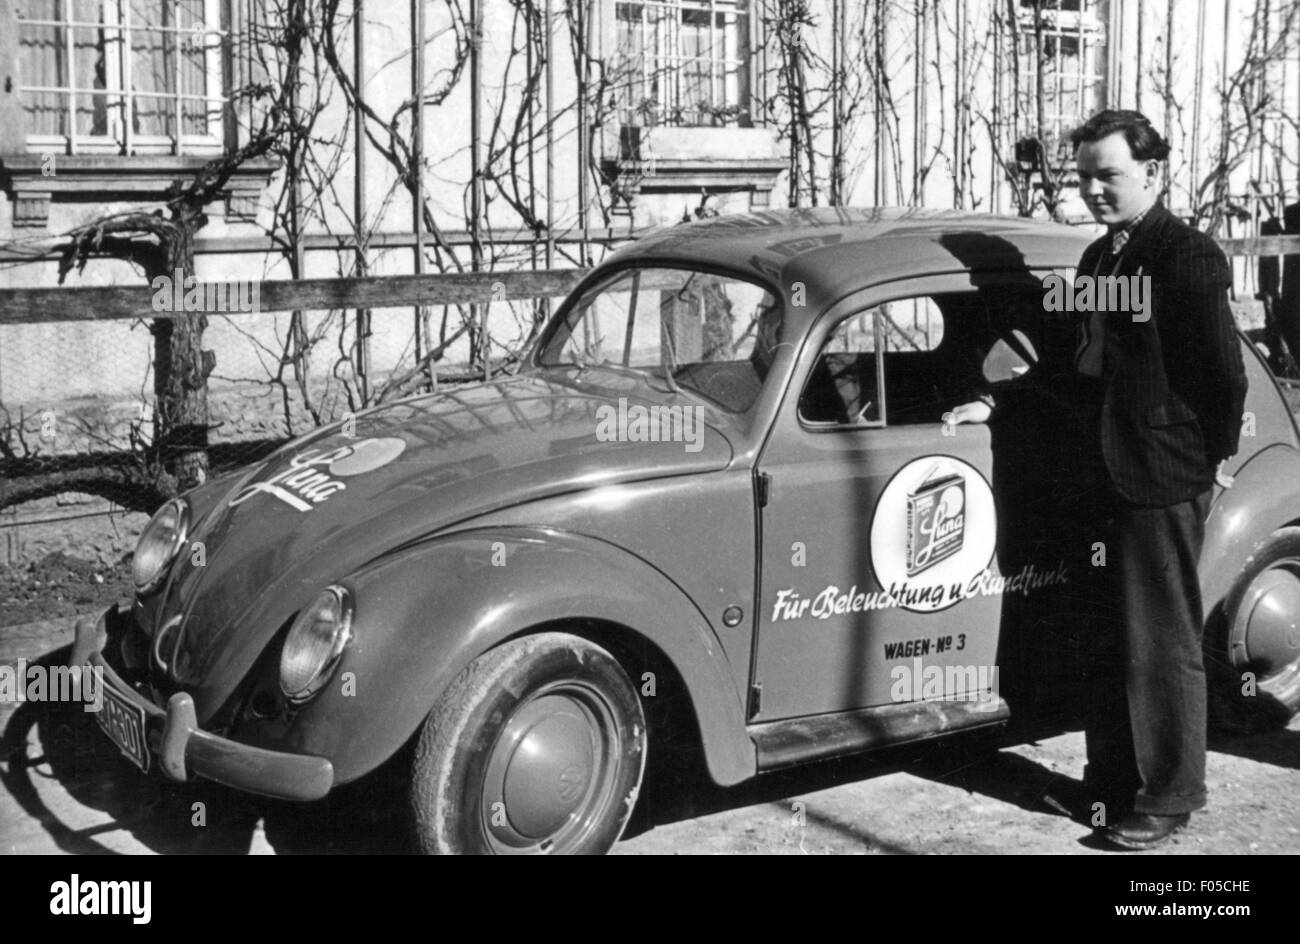 Trasporto / trasporto, auto, varianti di veicoli, Volkswagen, VW tipo 1 Beetle, uomo davanti all'auto con pubblicità per batterie 'Luna', tra 1945 - 1956, diritti aggiuntivi-clearences-non disponibile Foto Stock